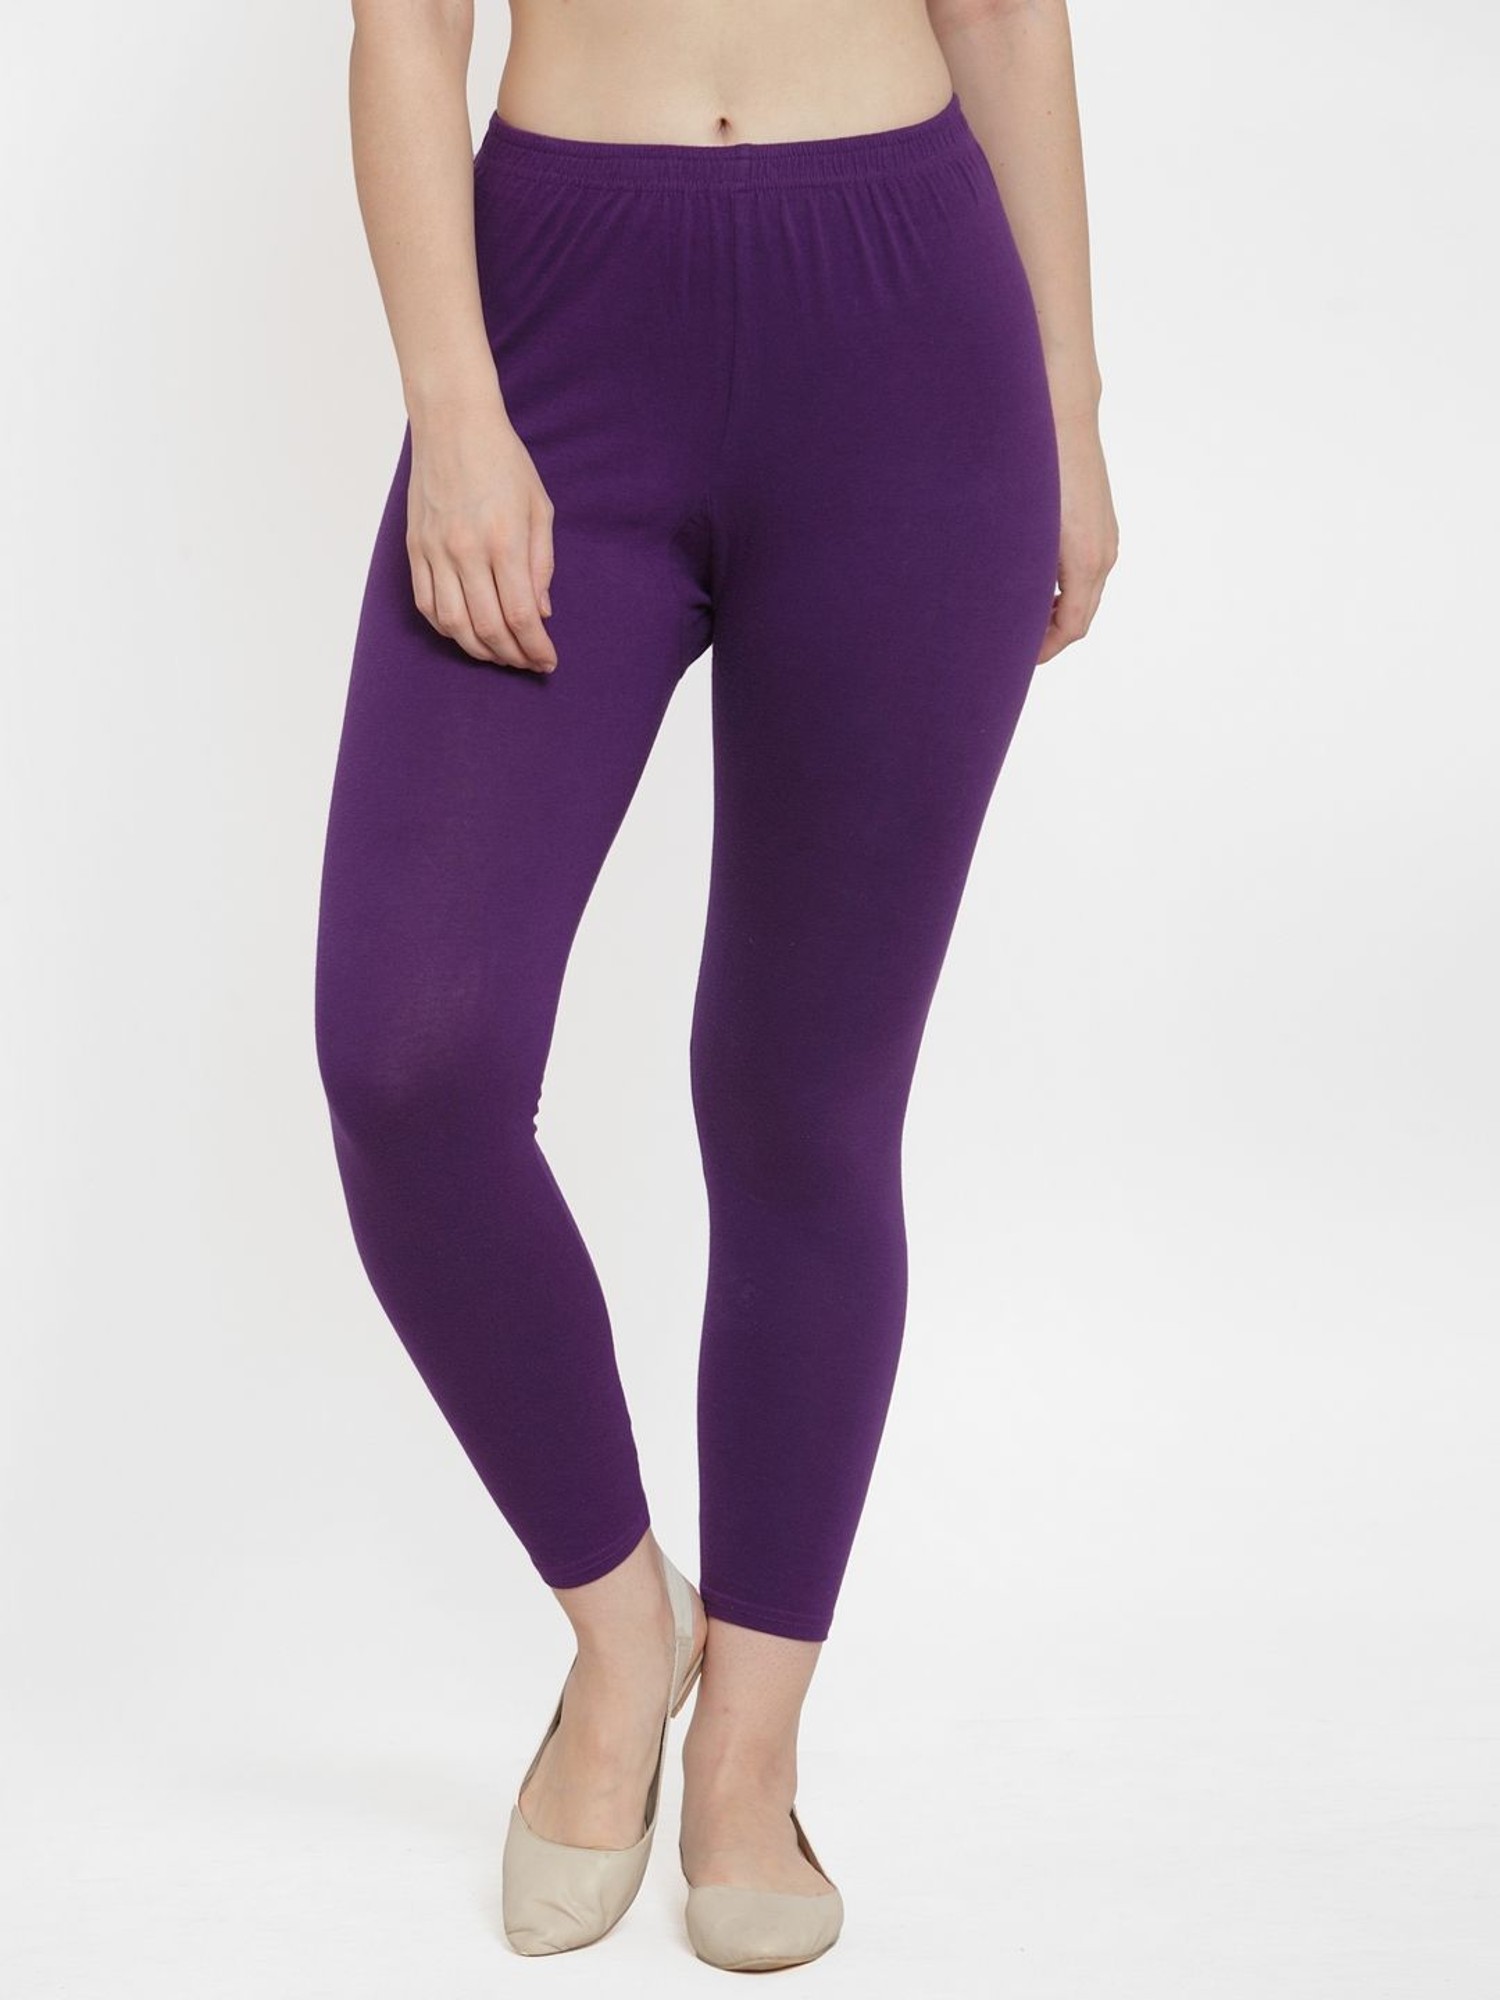 Aerie Offline lavender purple leggings - $24 - From Michaela-anthinhphatland.vn